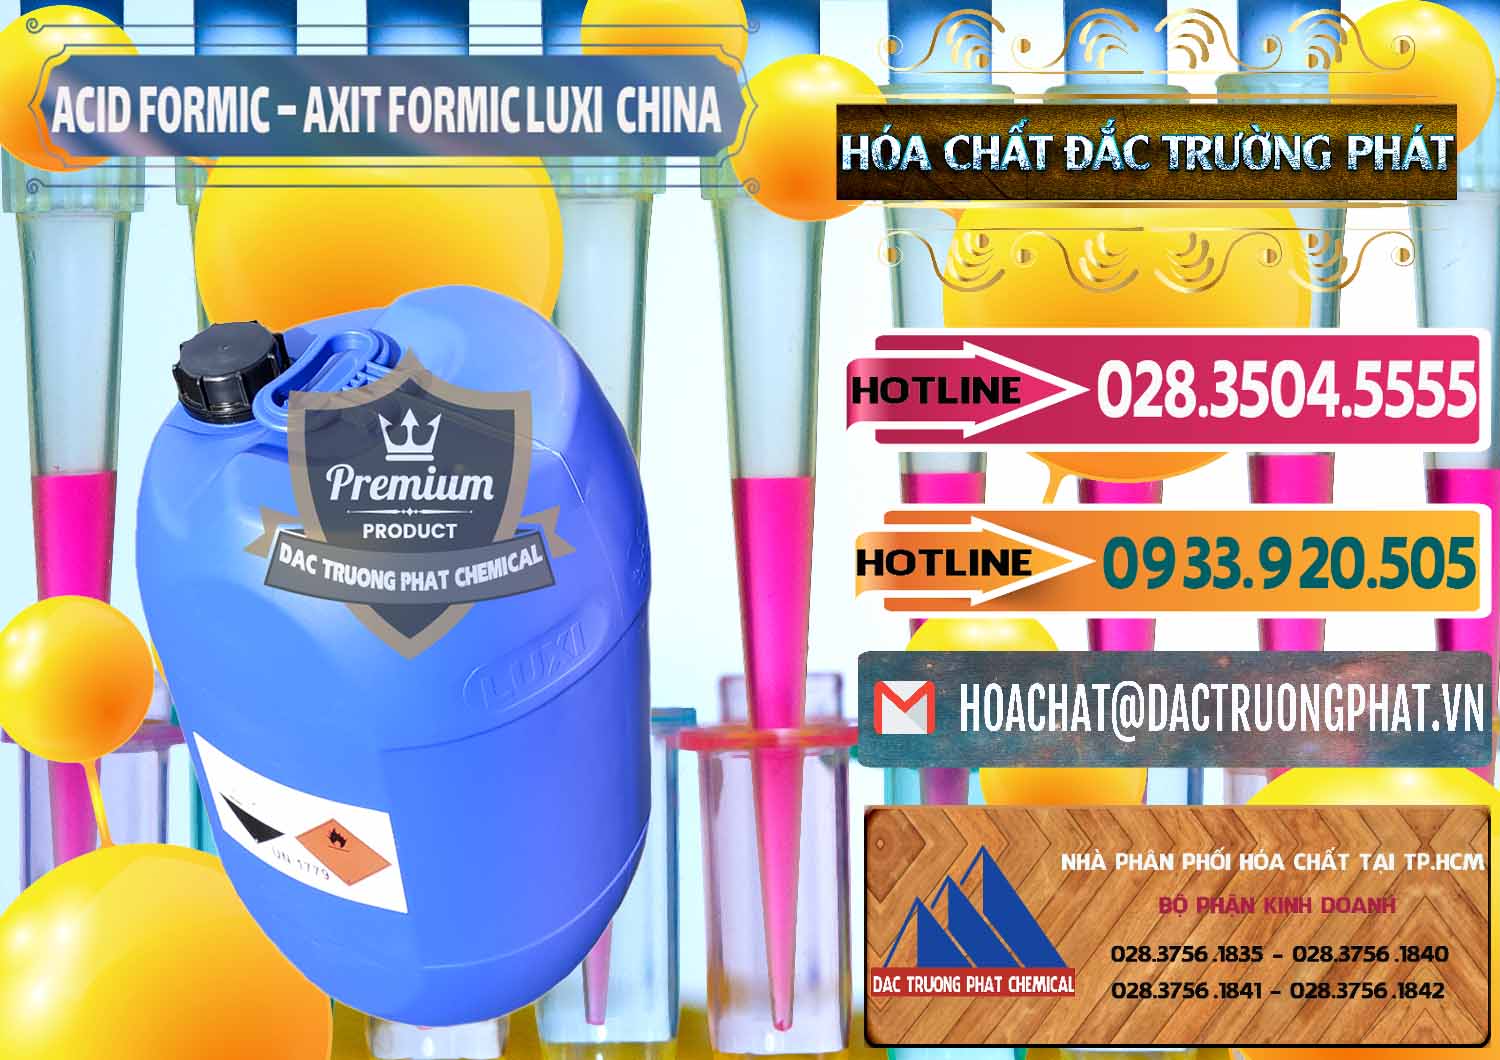 Đơn vị chuyên bán - cung cấp Acid Formic - Axit Formic Luxi Trung Quốc China - 0029 - Cty chuyên phân phối - nhập khẩu hóa chất tại TP.HCM - dactruongphat.vn